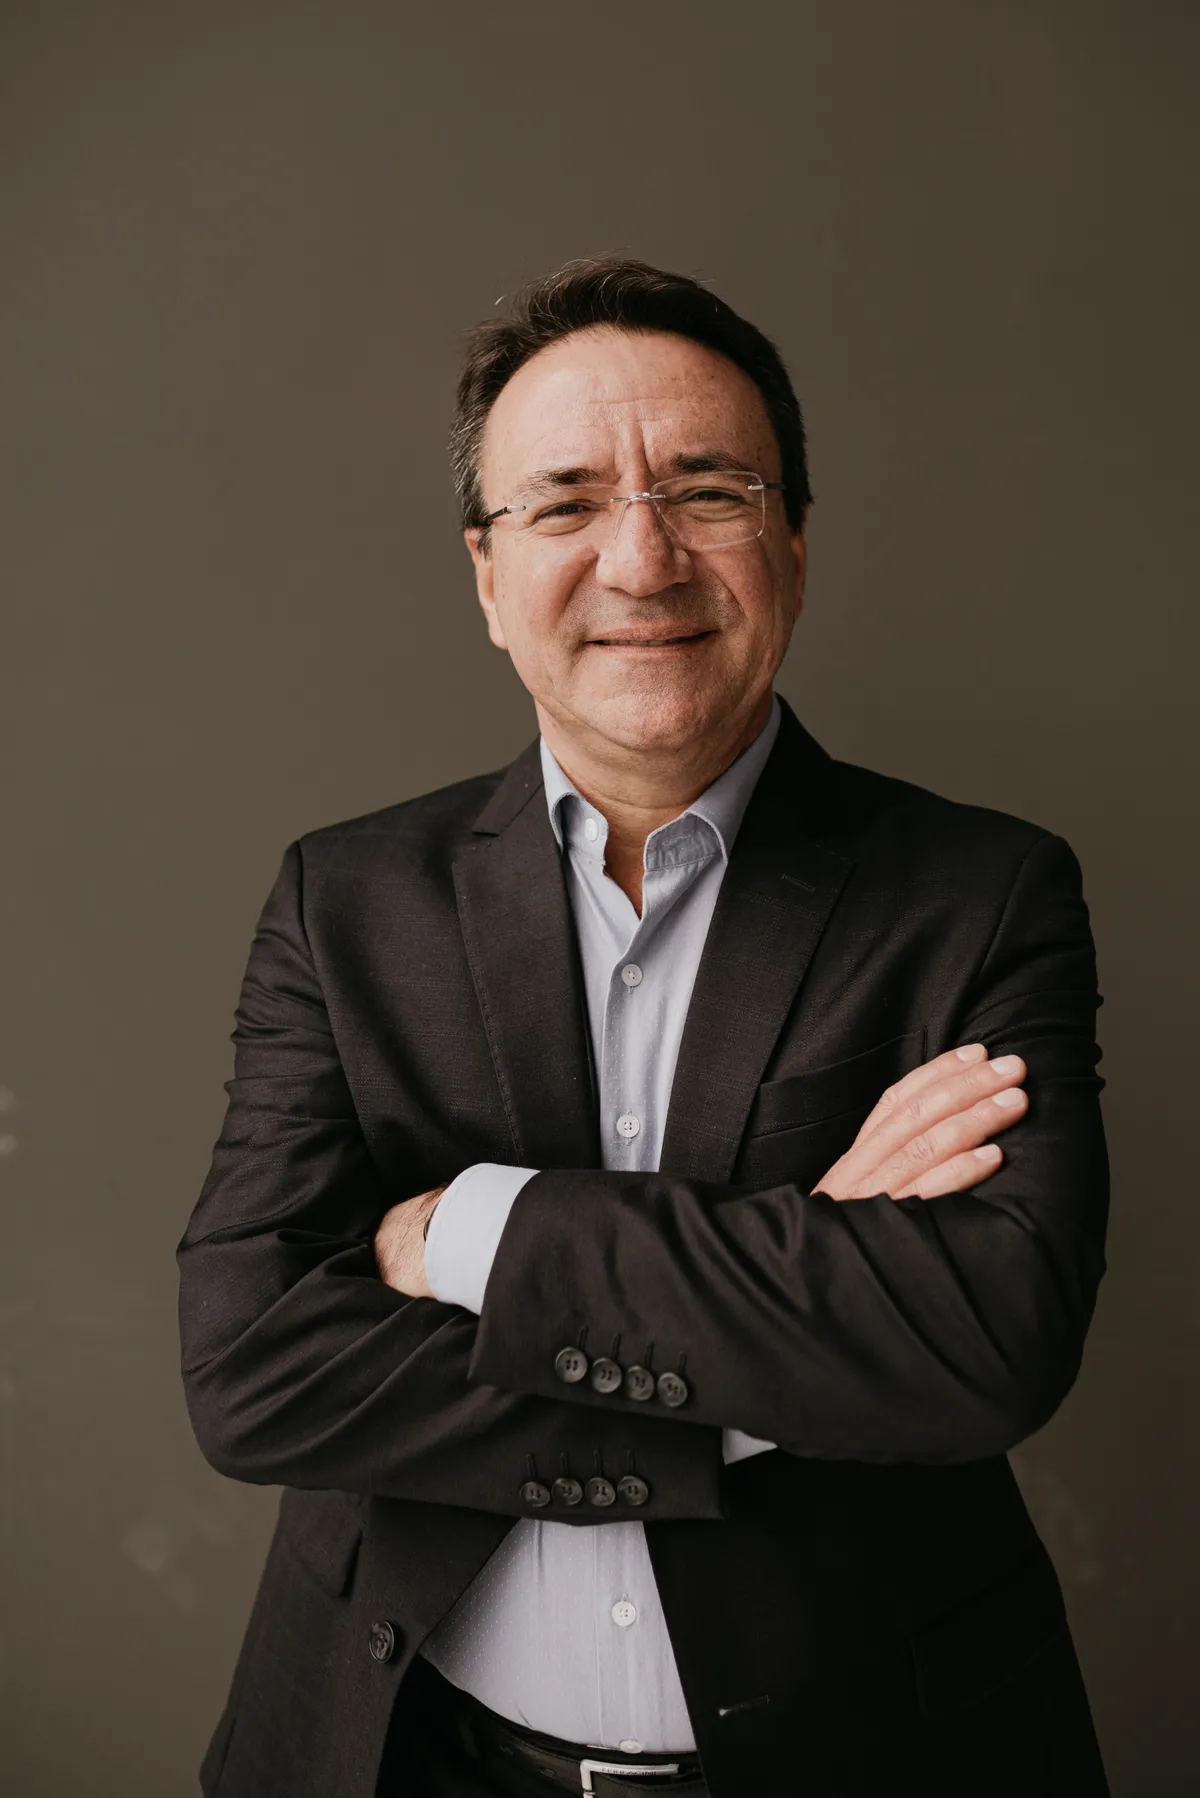 Claudio da Silva Carrasco